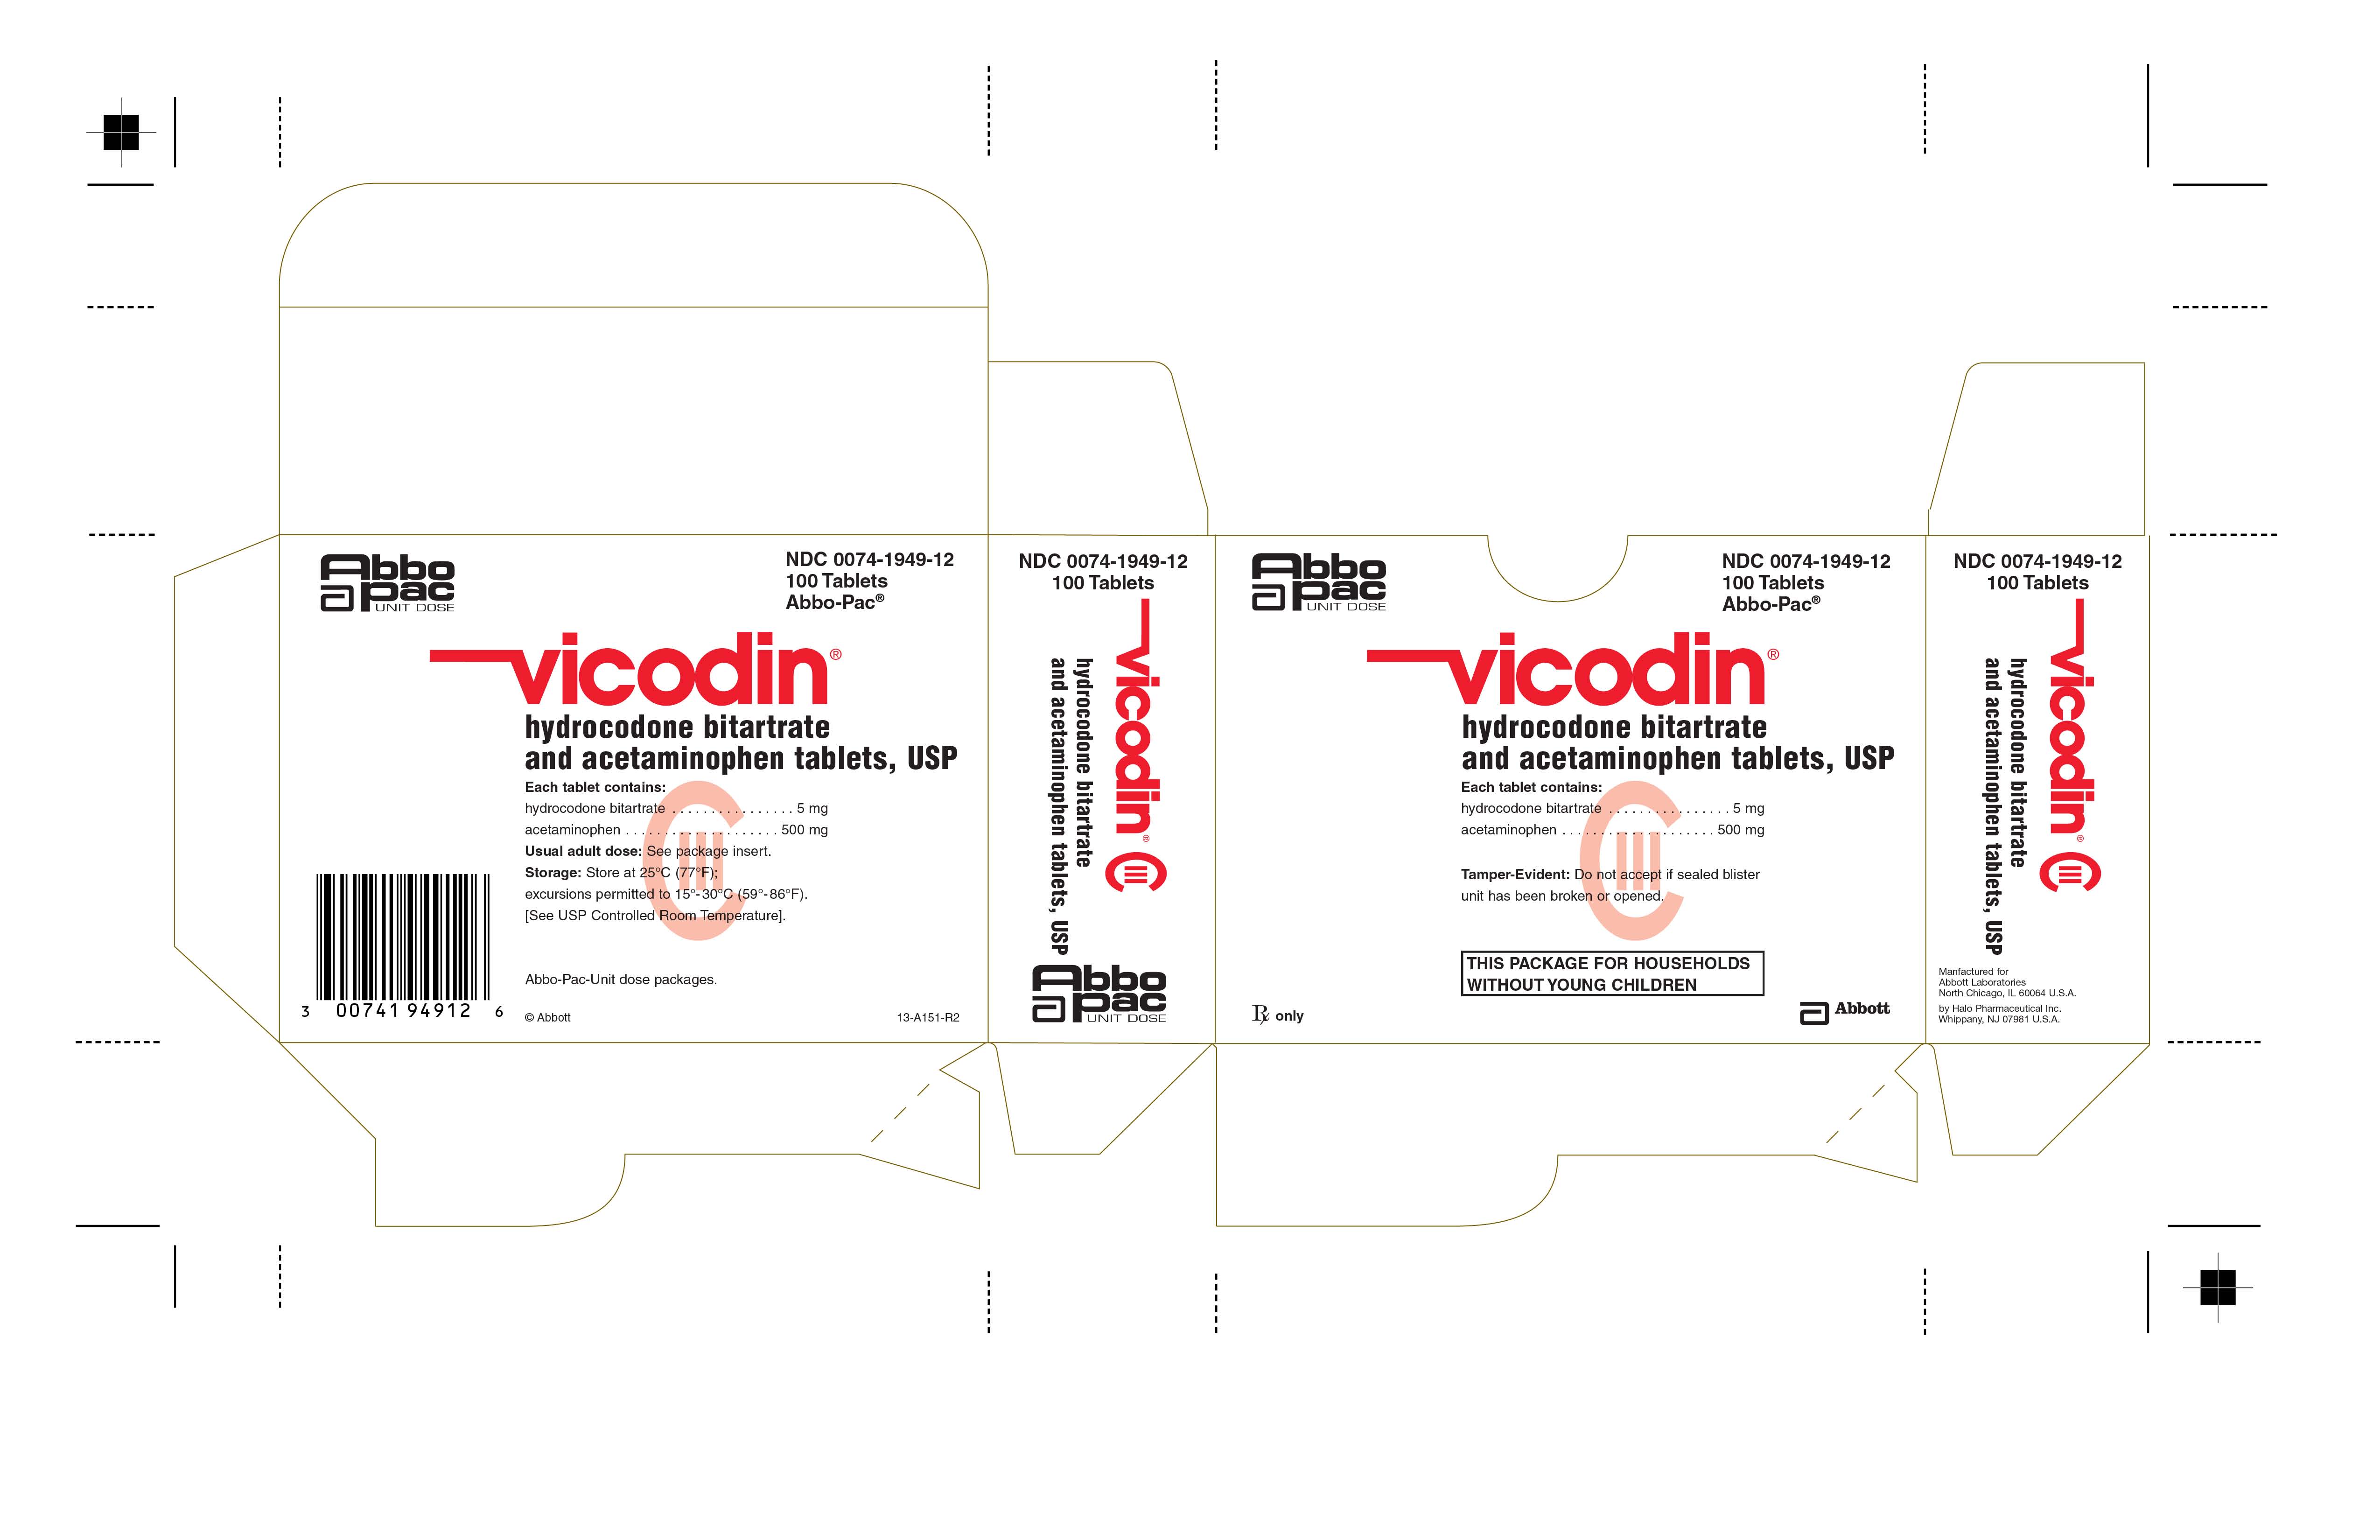 NDC 0074-1949-12 Vicodin® 5 mg 100 Tablets Abbo-pac® HUD